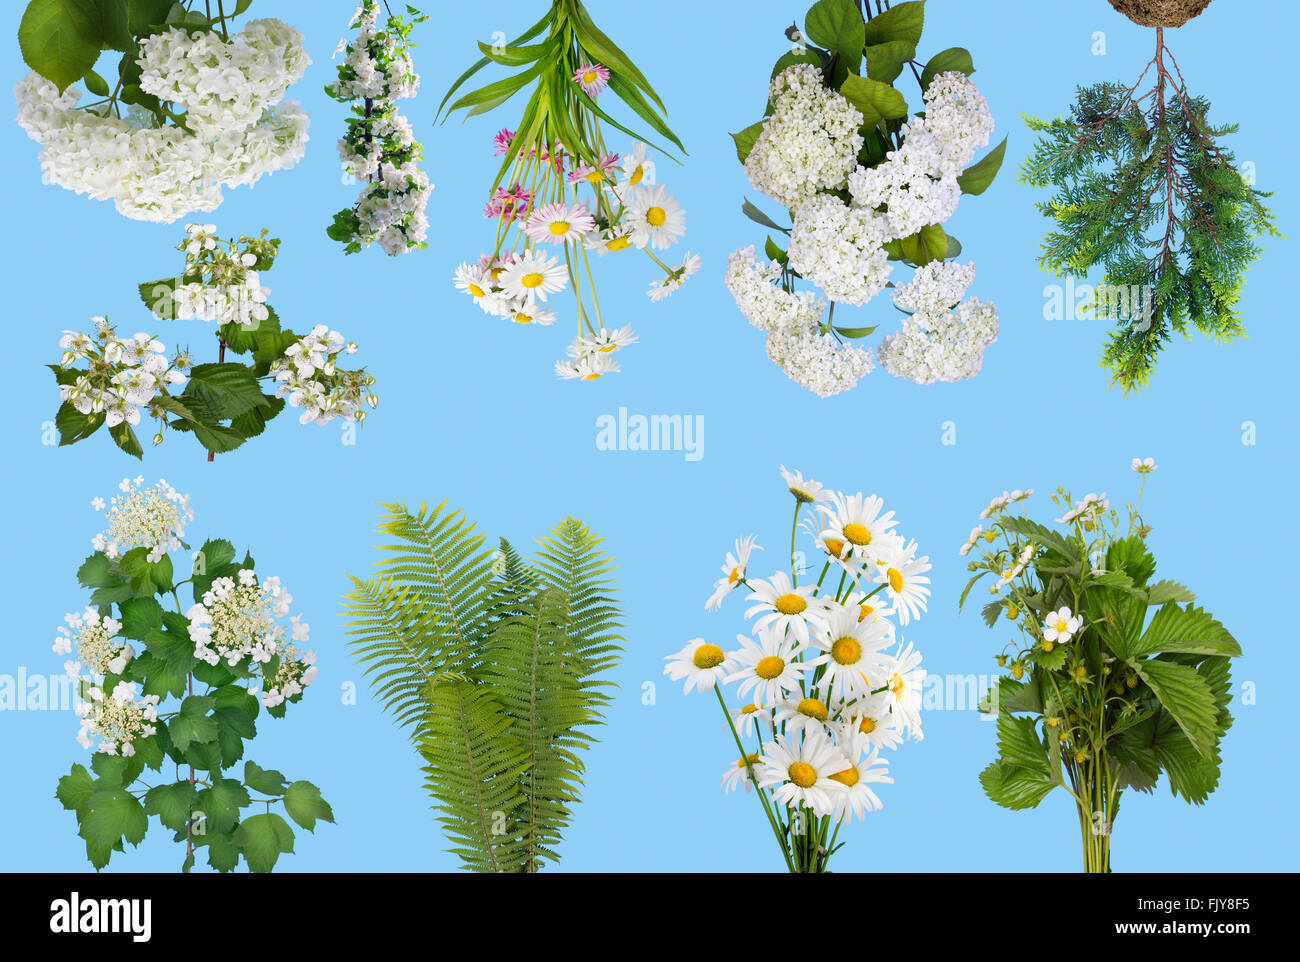 Sanften Frühling Pflanzen und Blumen auf die Cyan-blauen Hintergrund isoliert. Collage aus mehreren Fotos eingestellt Stockfoto